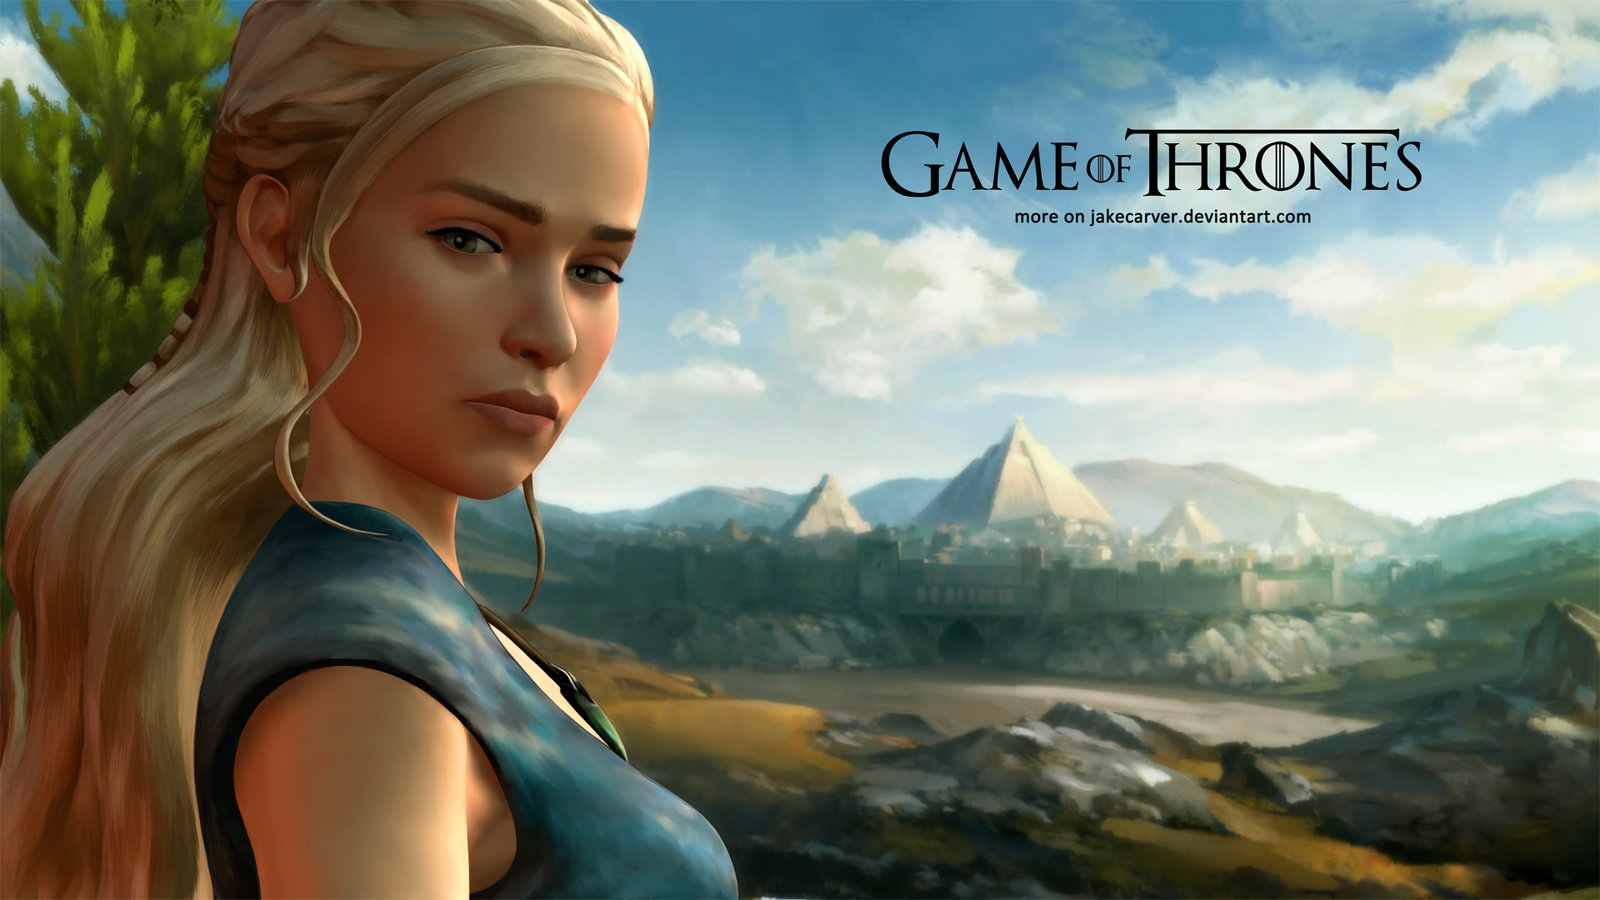 Game of Thrones Daenerys Targaryen Wallpaper by JakeCarver on